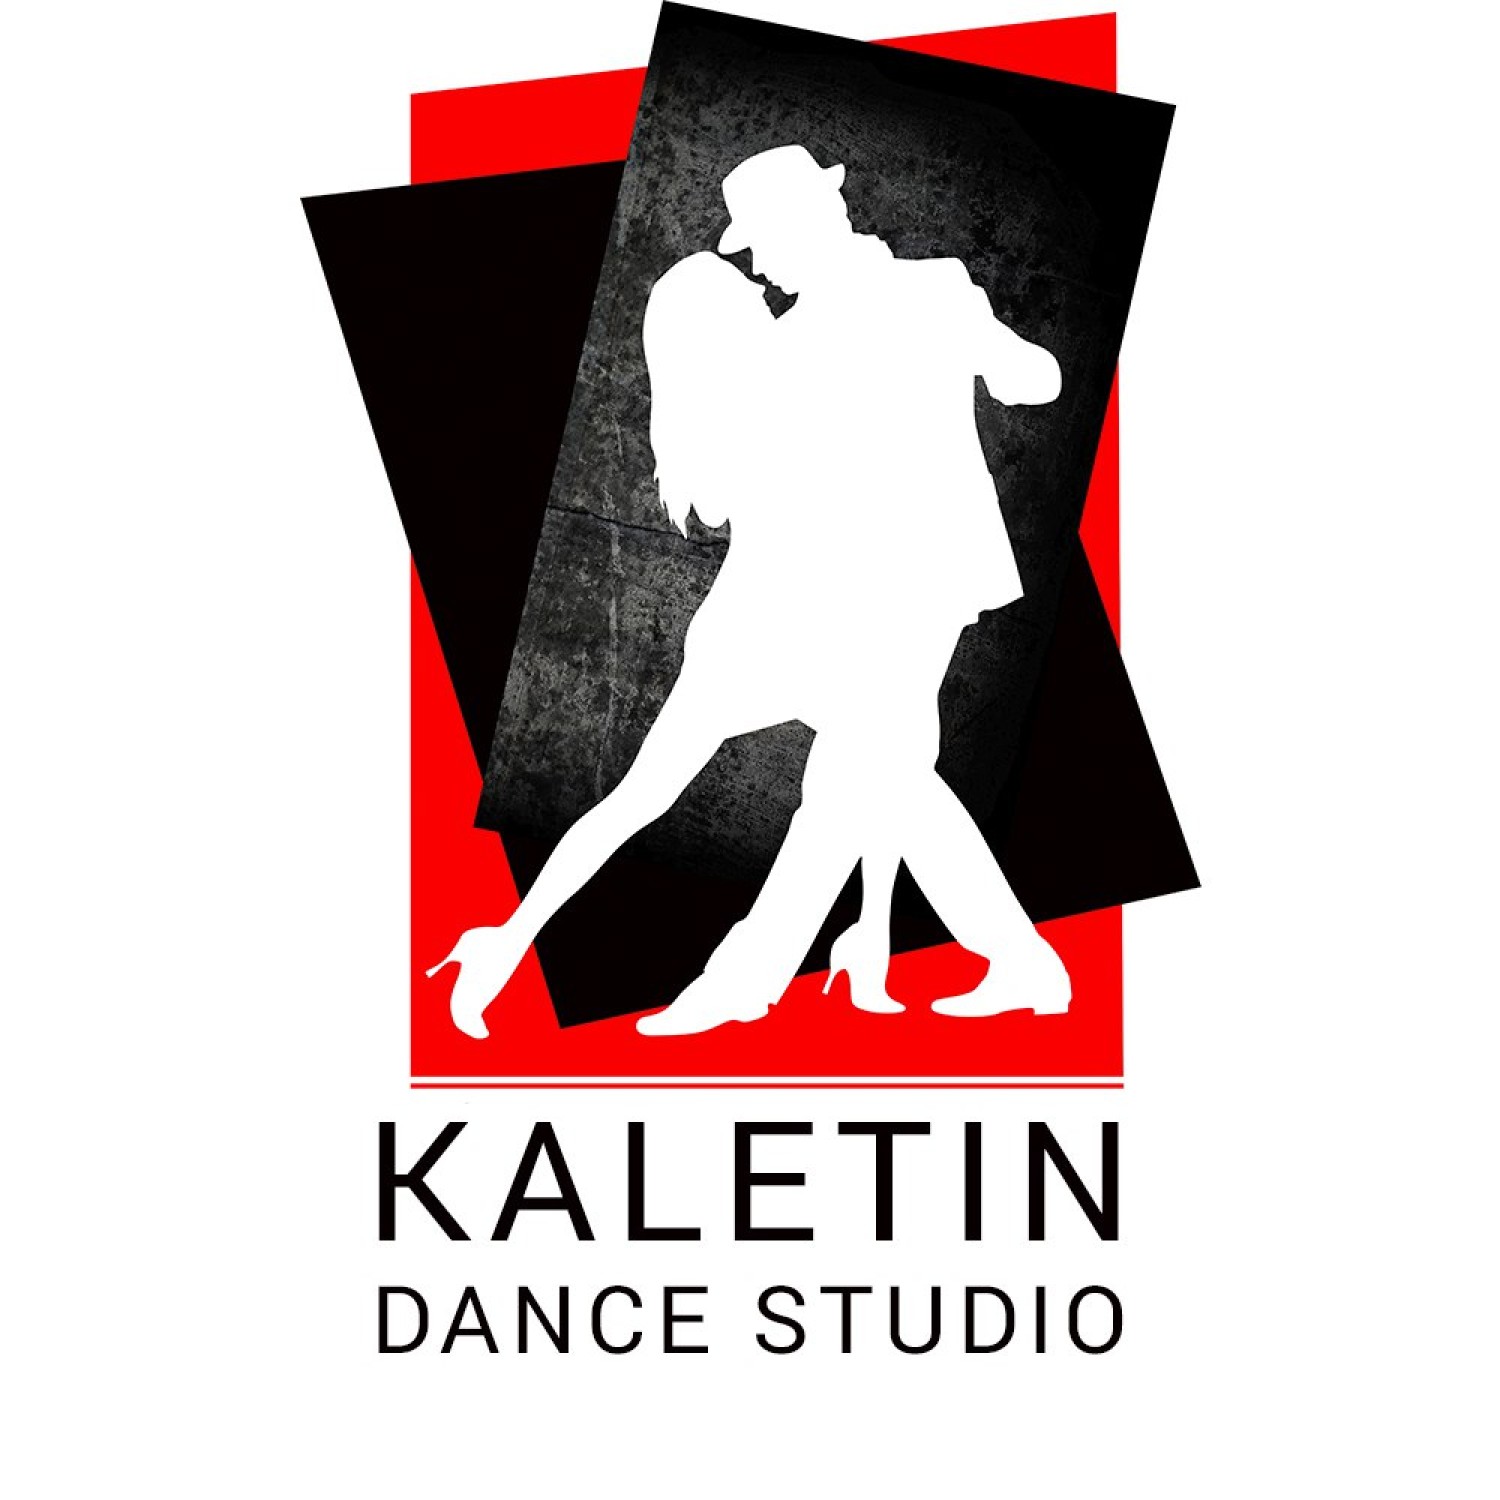 KALETIN DANCE STUDIO